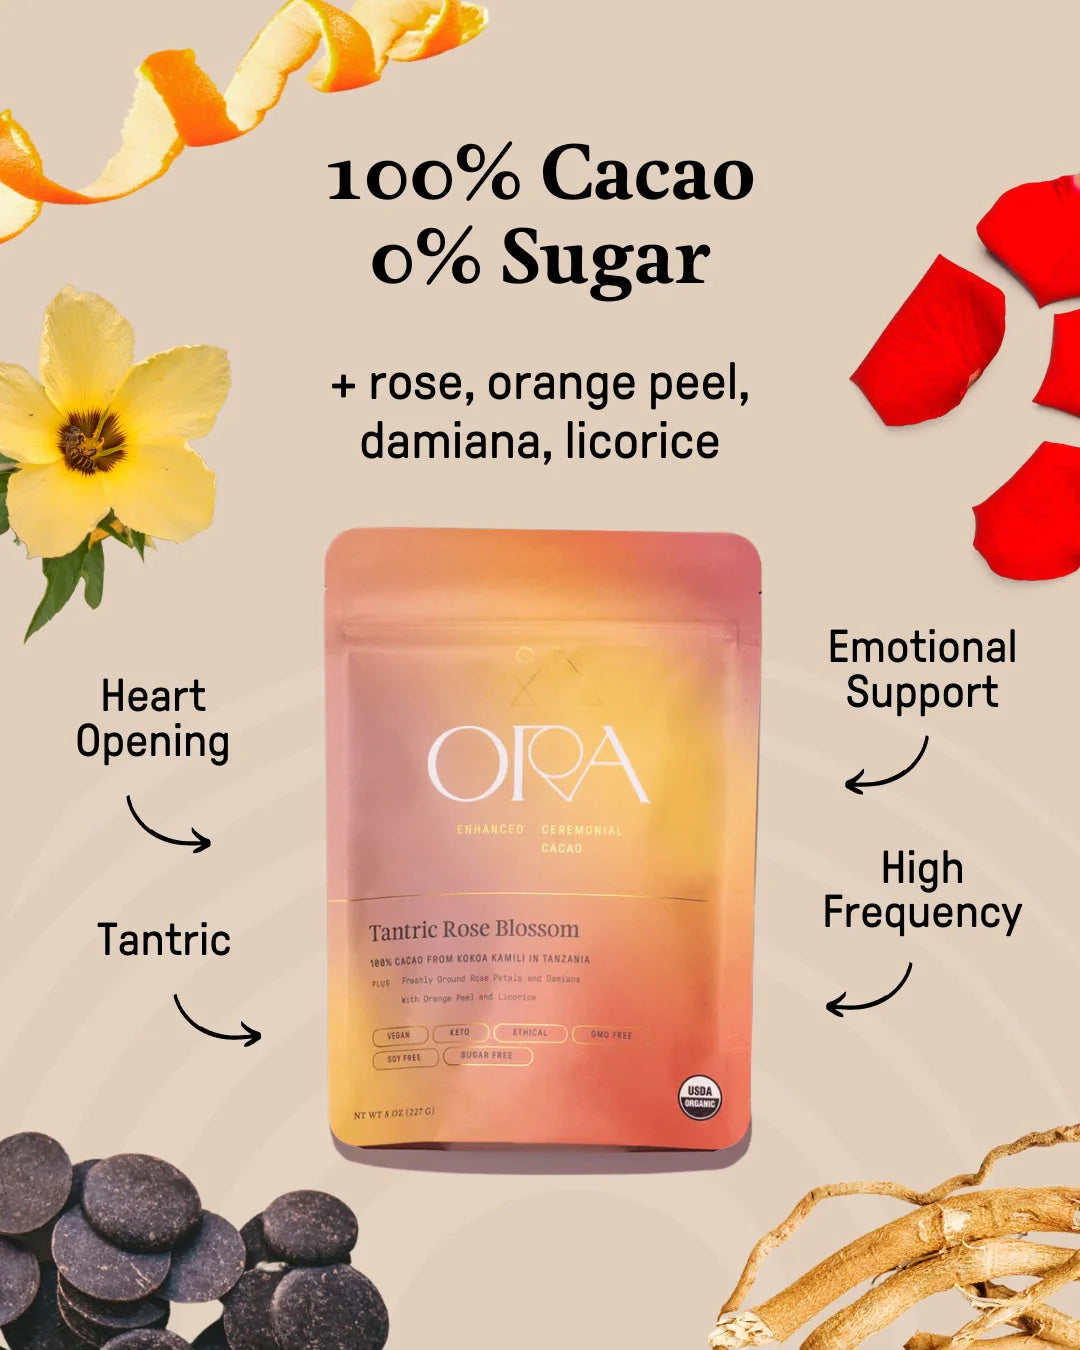 Tantric Rose Blossom - Enhanced 100% Pure Organic Ceremonial Cacao 1/2lb